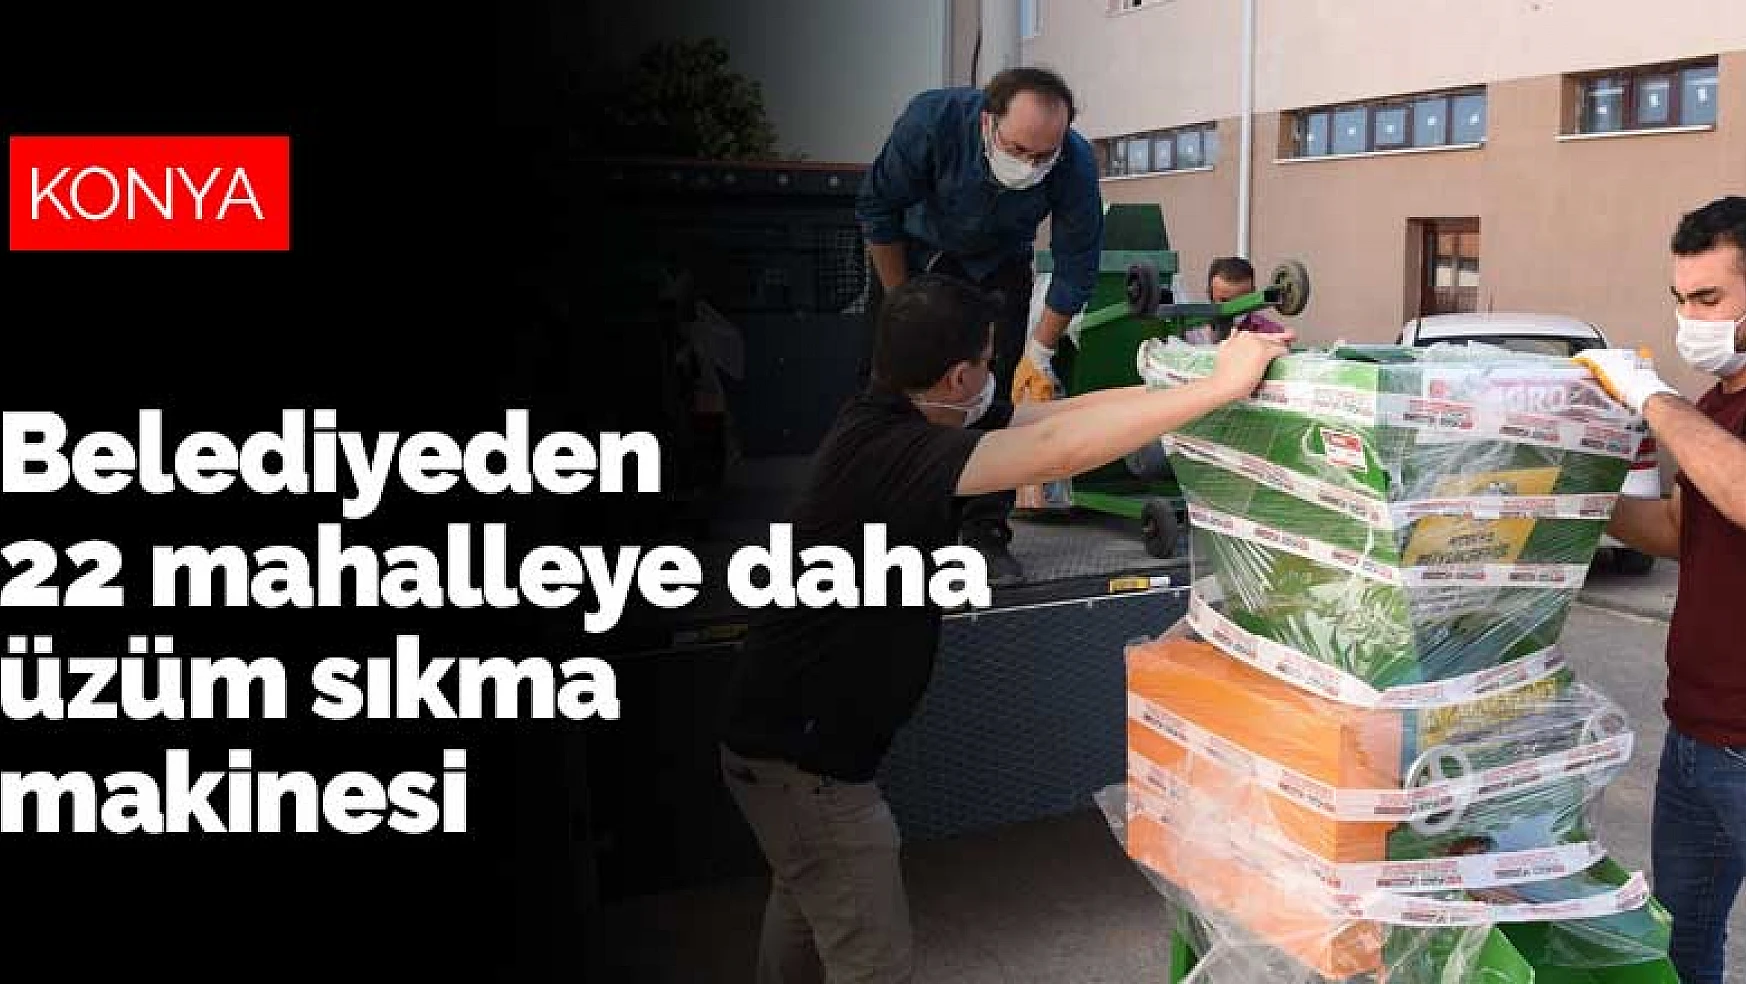 Konya Büyükşehir Belediyesi'nden 22 mahalleye daha üzüm sıkma makinesi